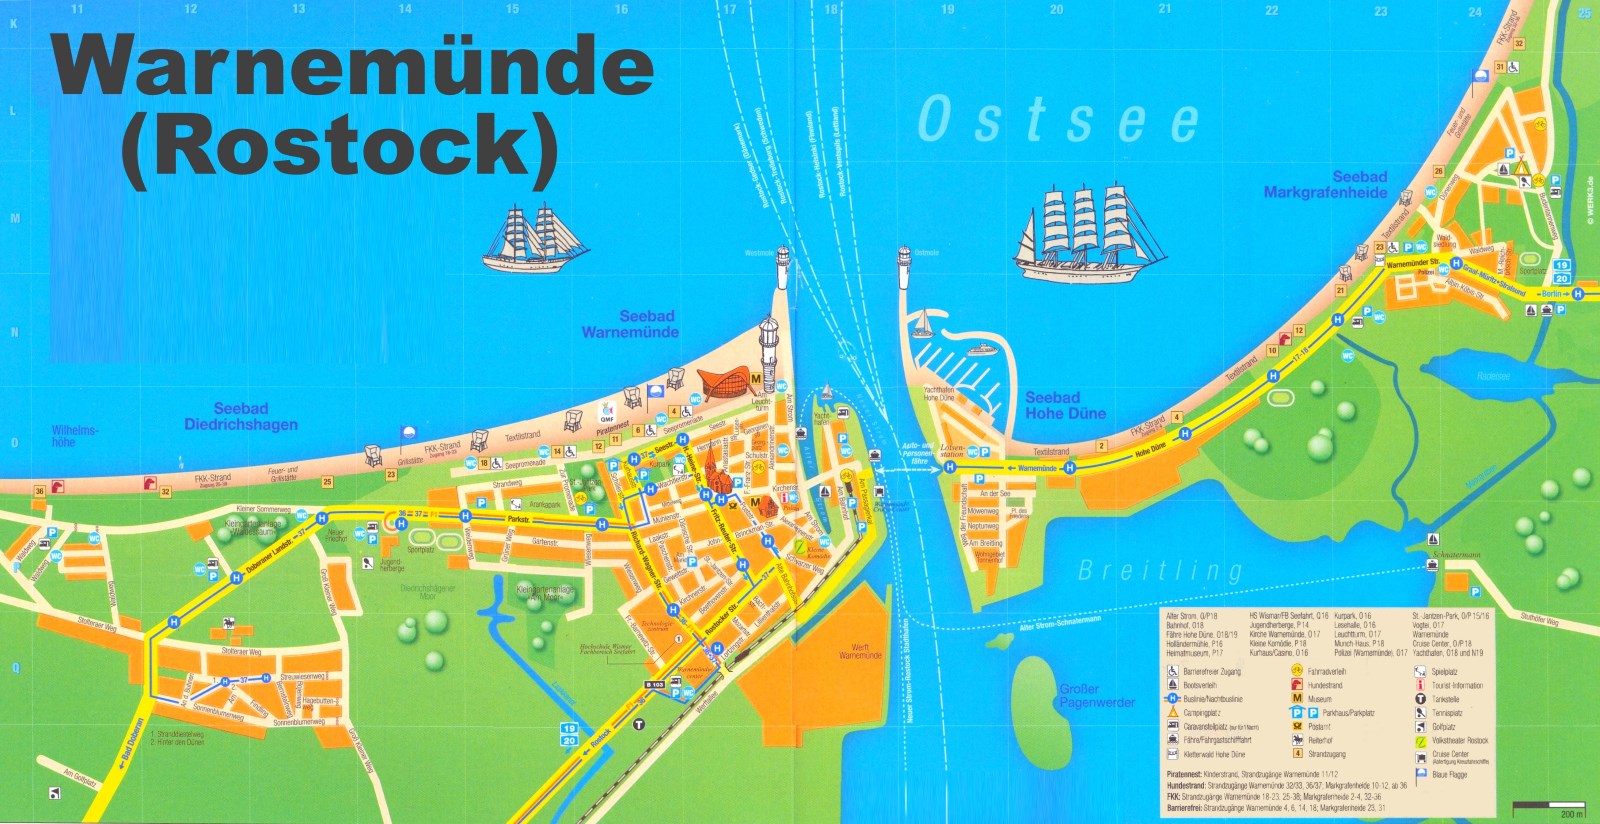 Puerto de Rostock, Hafen Rostock - Megaconstrucciones, Extreme Engineering